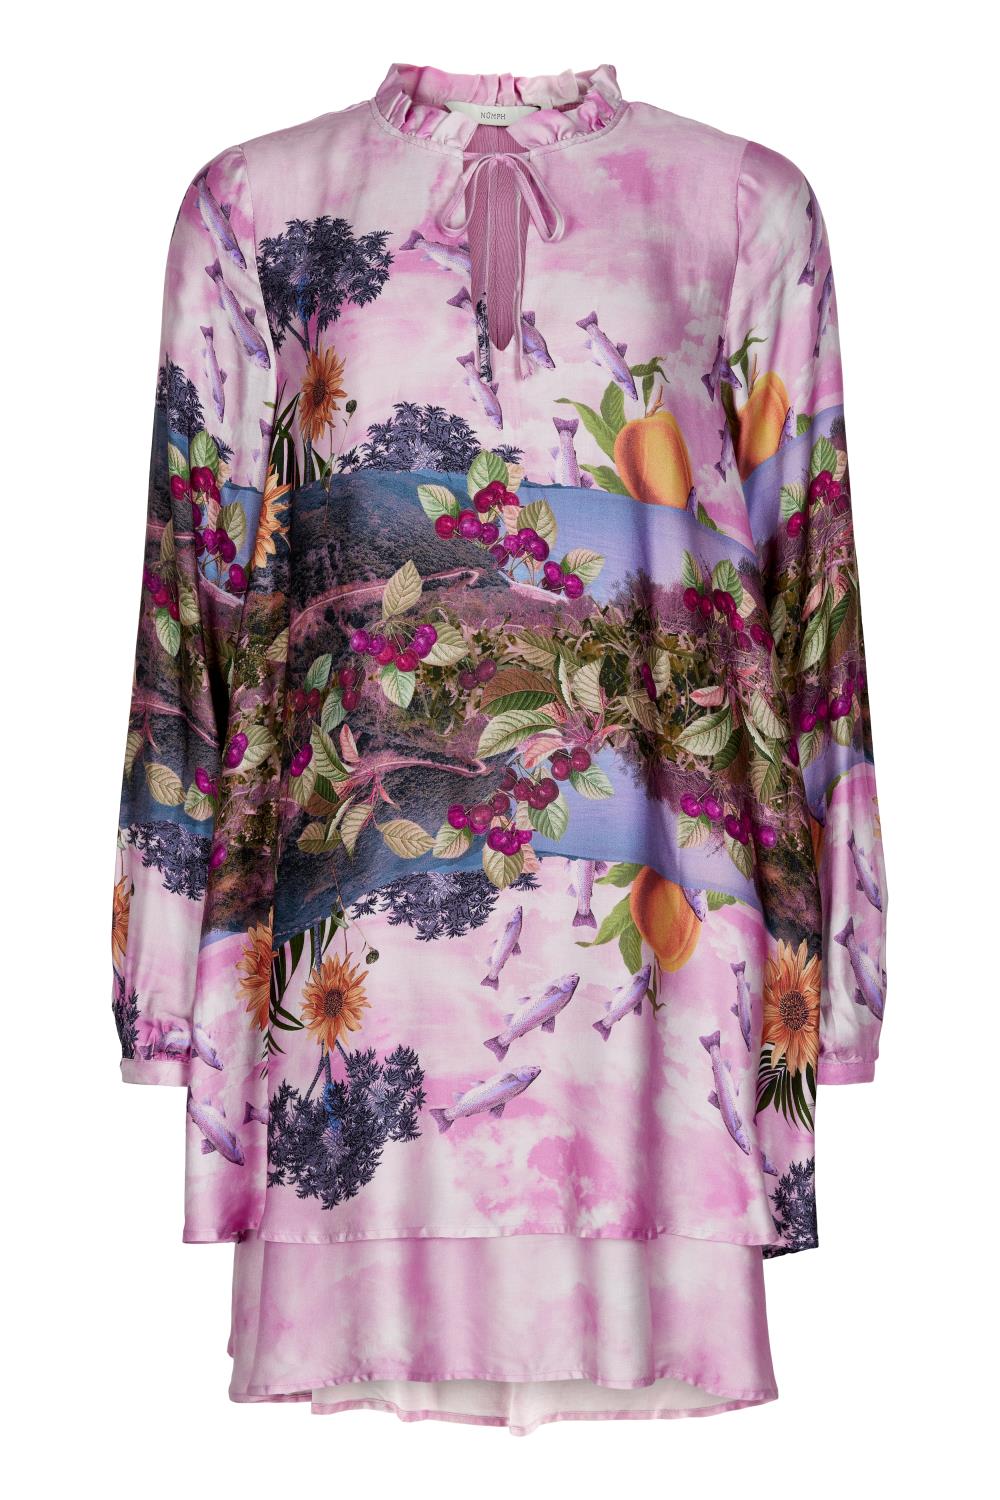 Nümph Bayleah dress, lilac sac